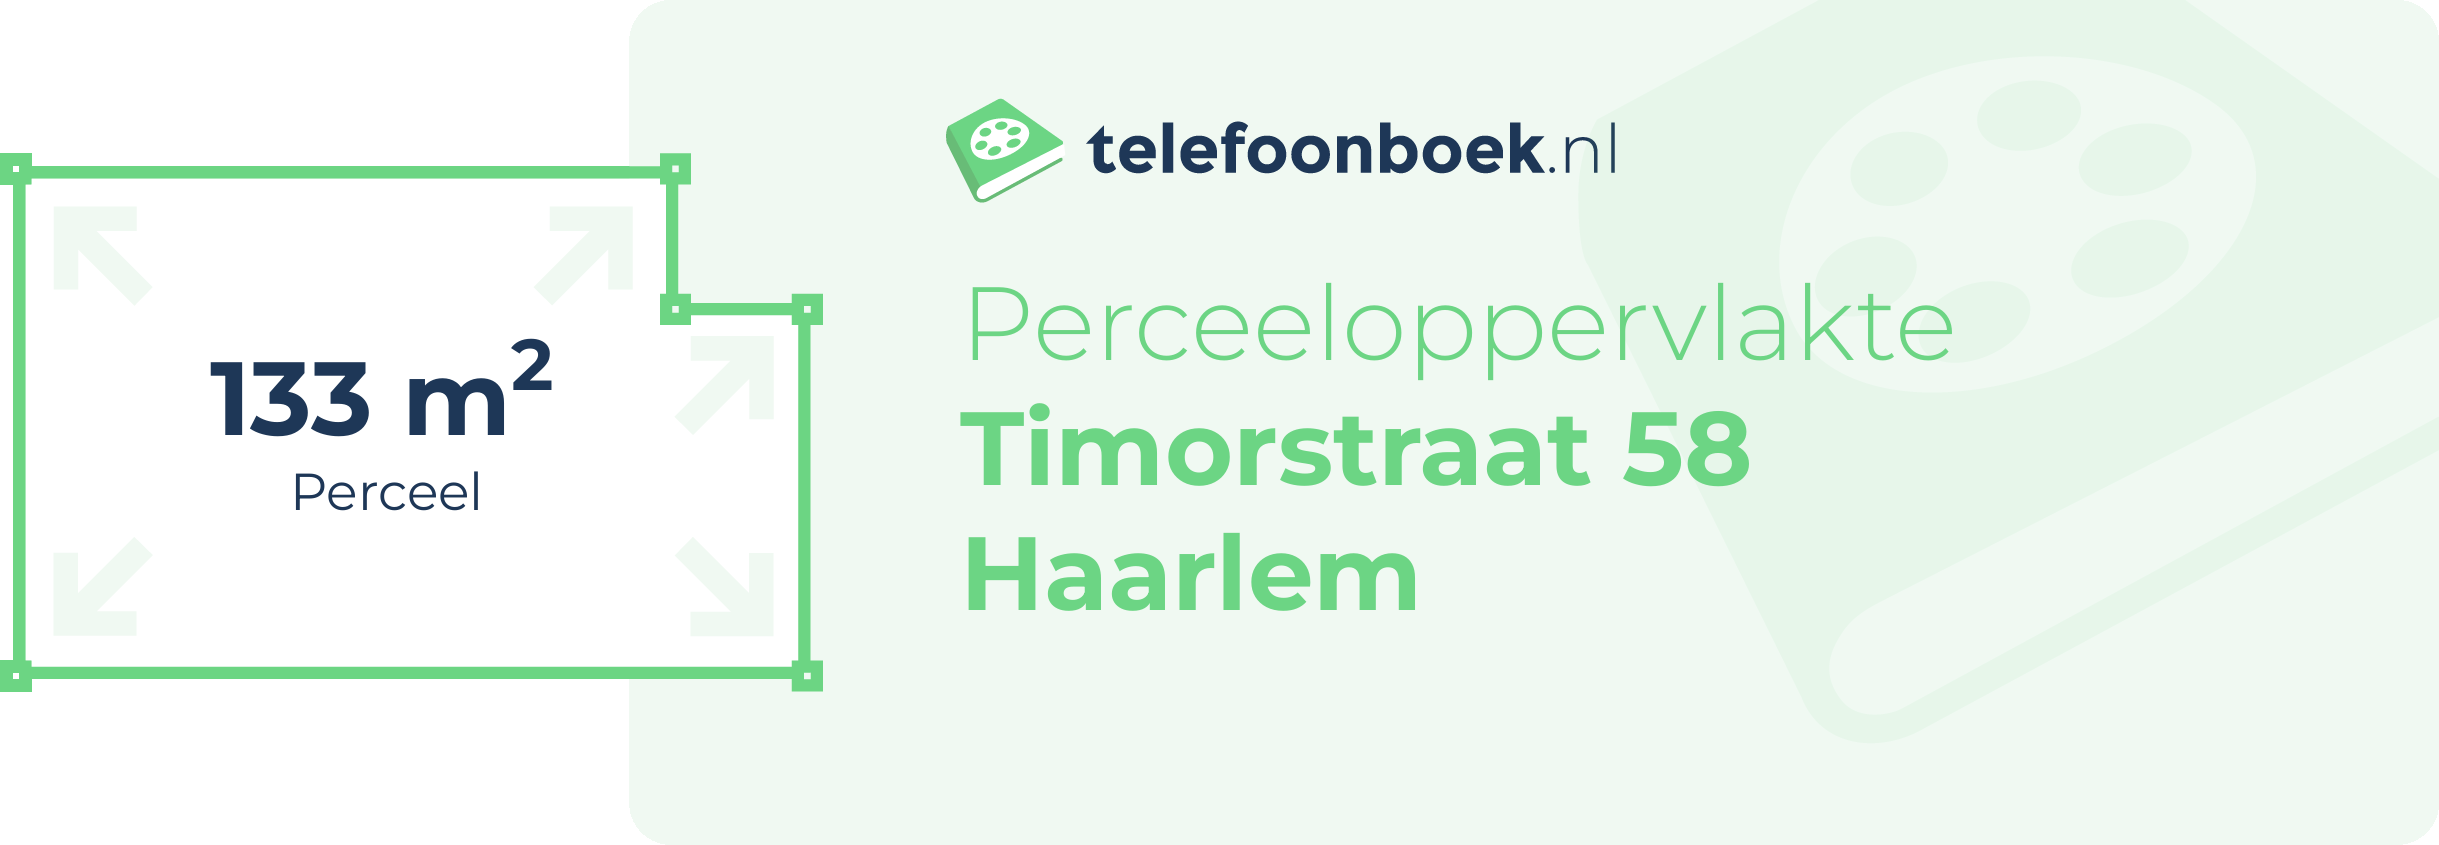 Perceeloppervlakte Timorstraat 58 Haarlem